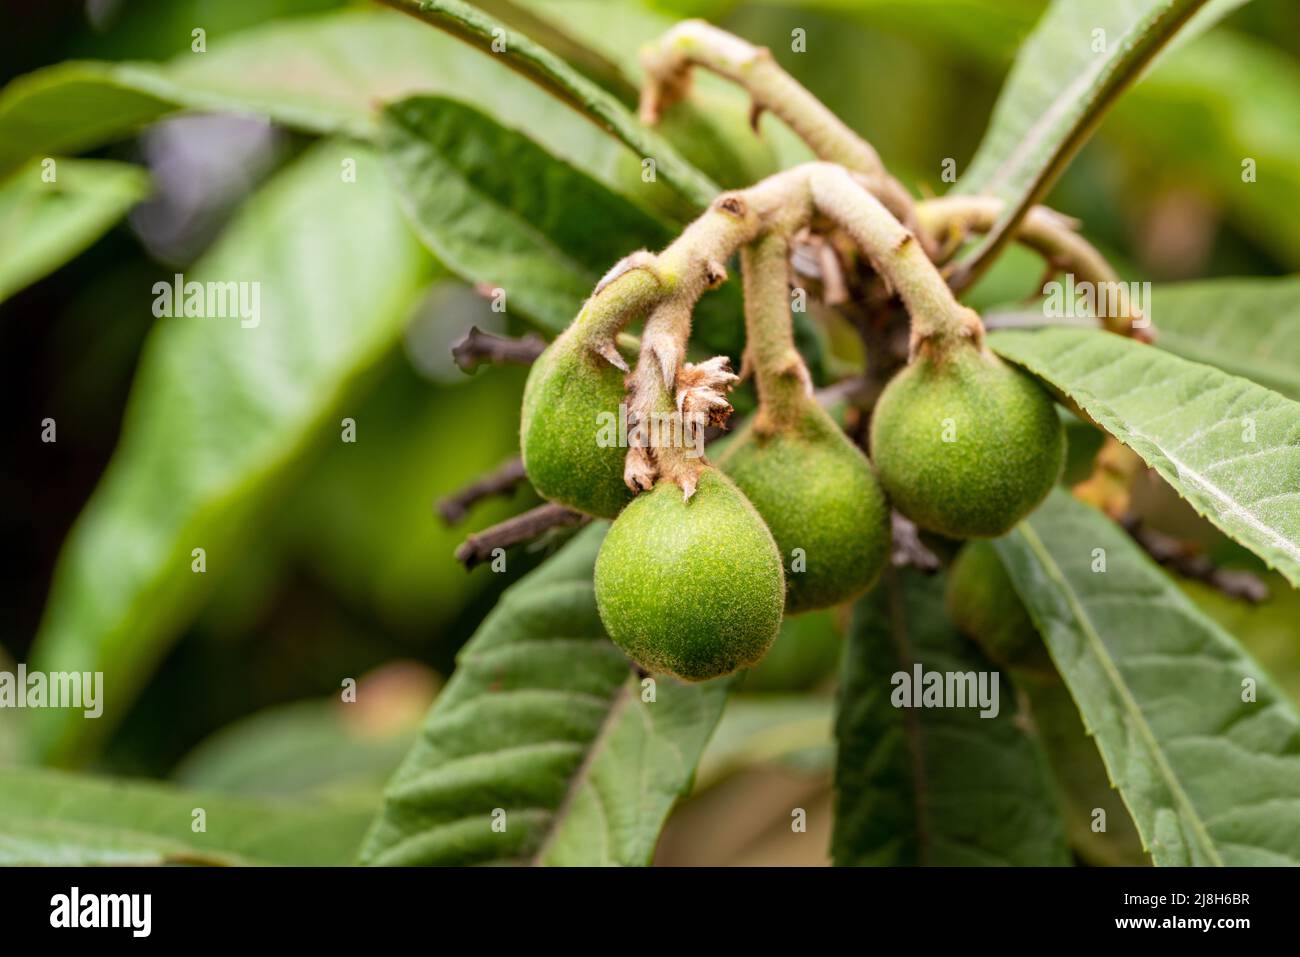 Foto de cerca de un manojo de frutos no madurados en el árbol. Concepto de frutas de primavera y verano. Fotografías de alta calidad Foto de stock